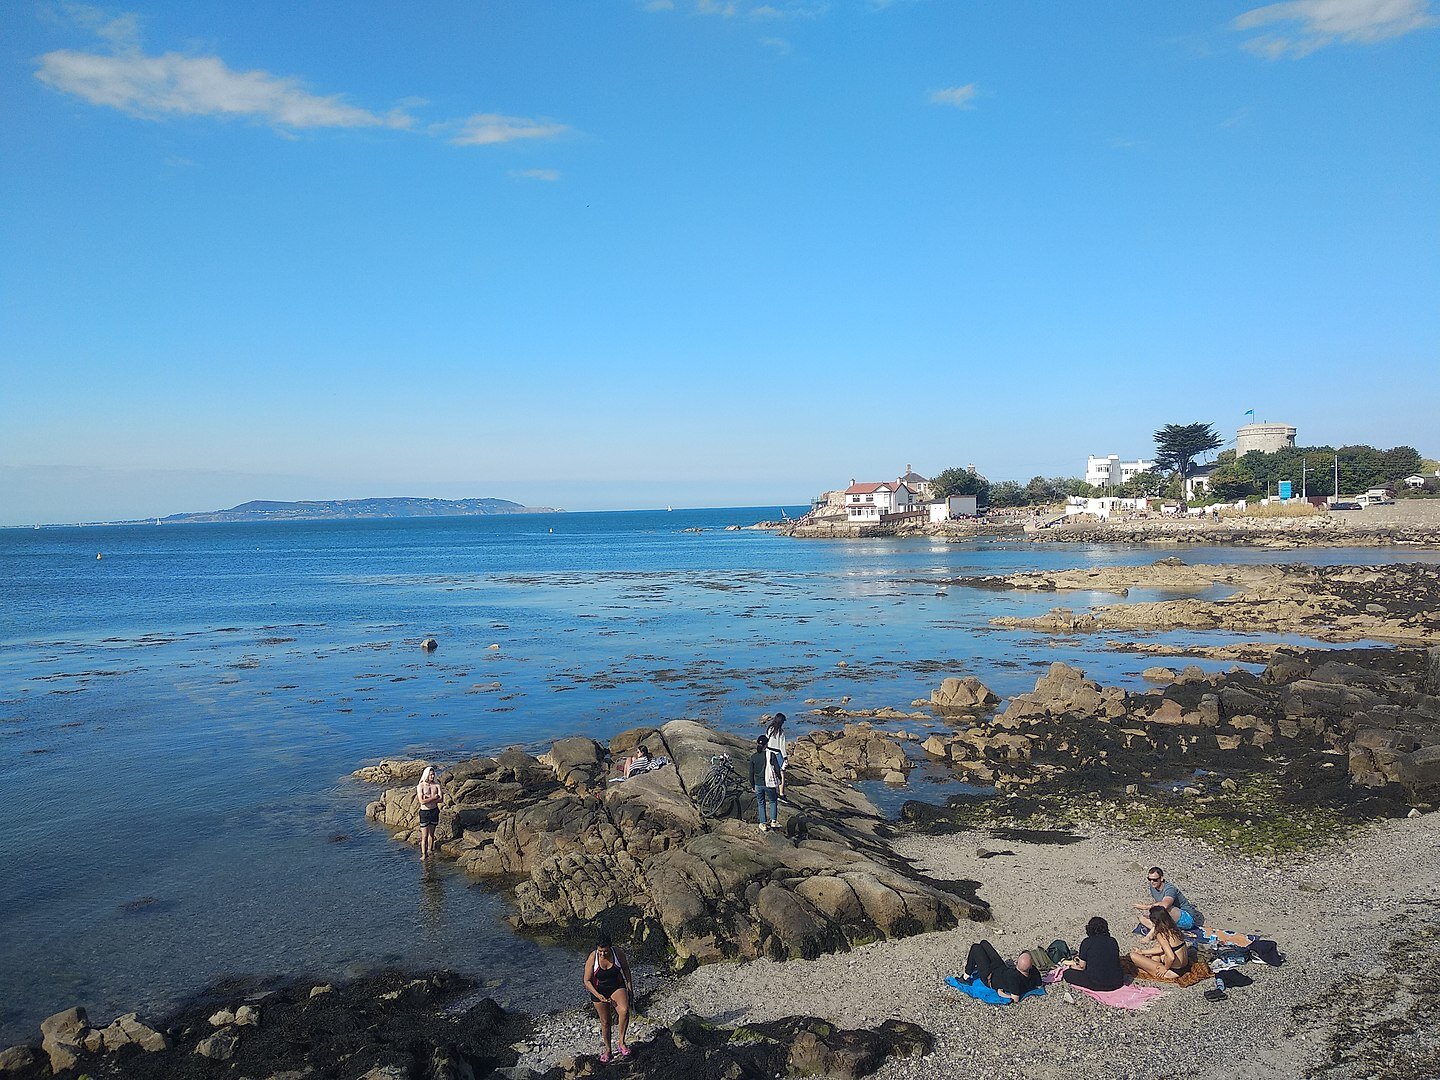 Fotografia przedstawiająca nadmorską, kamienistą plażę. Na pierwszym planie wypoczywający ludzie, ubrani w kostiumy kąpielowe. Na drugim planie, po prawej stronie niskie zabudowania. W tle zarys wyspy.